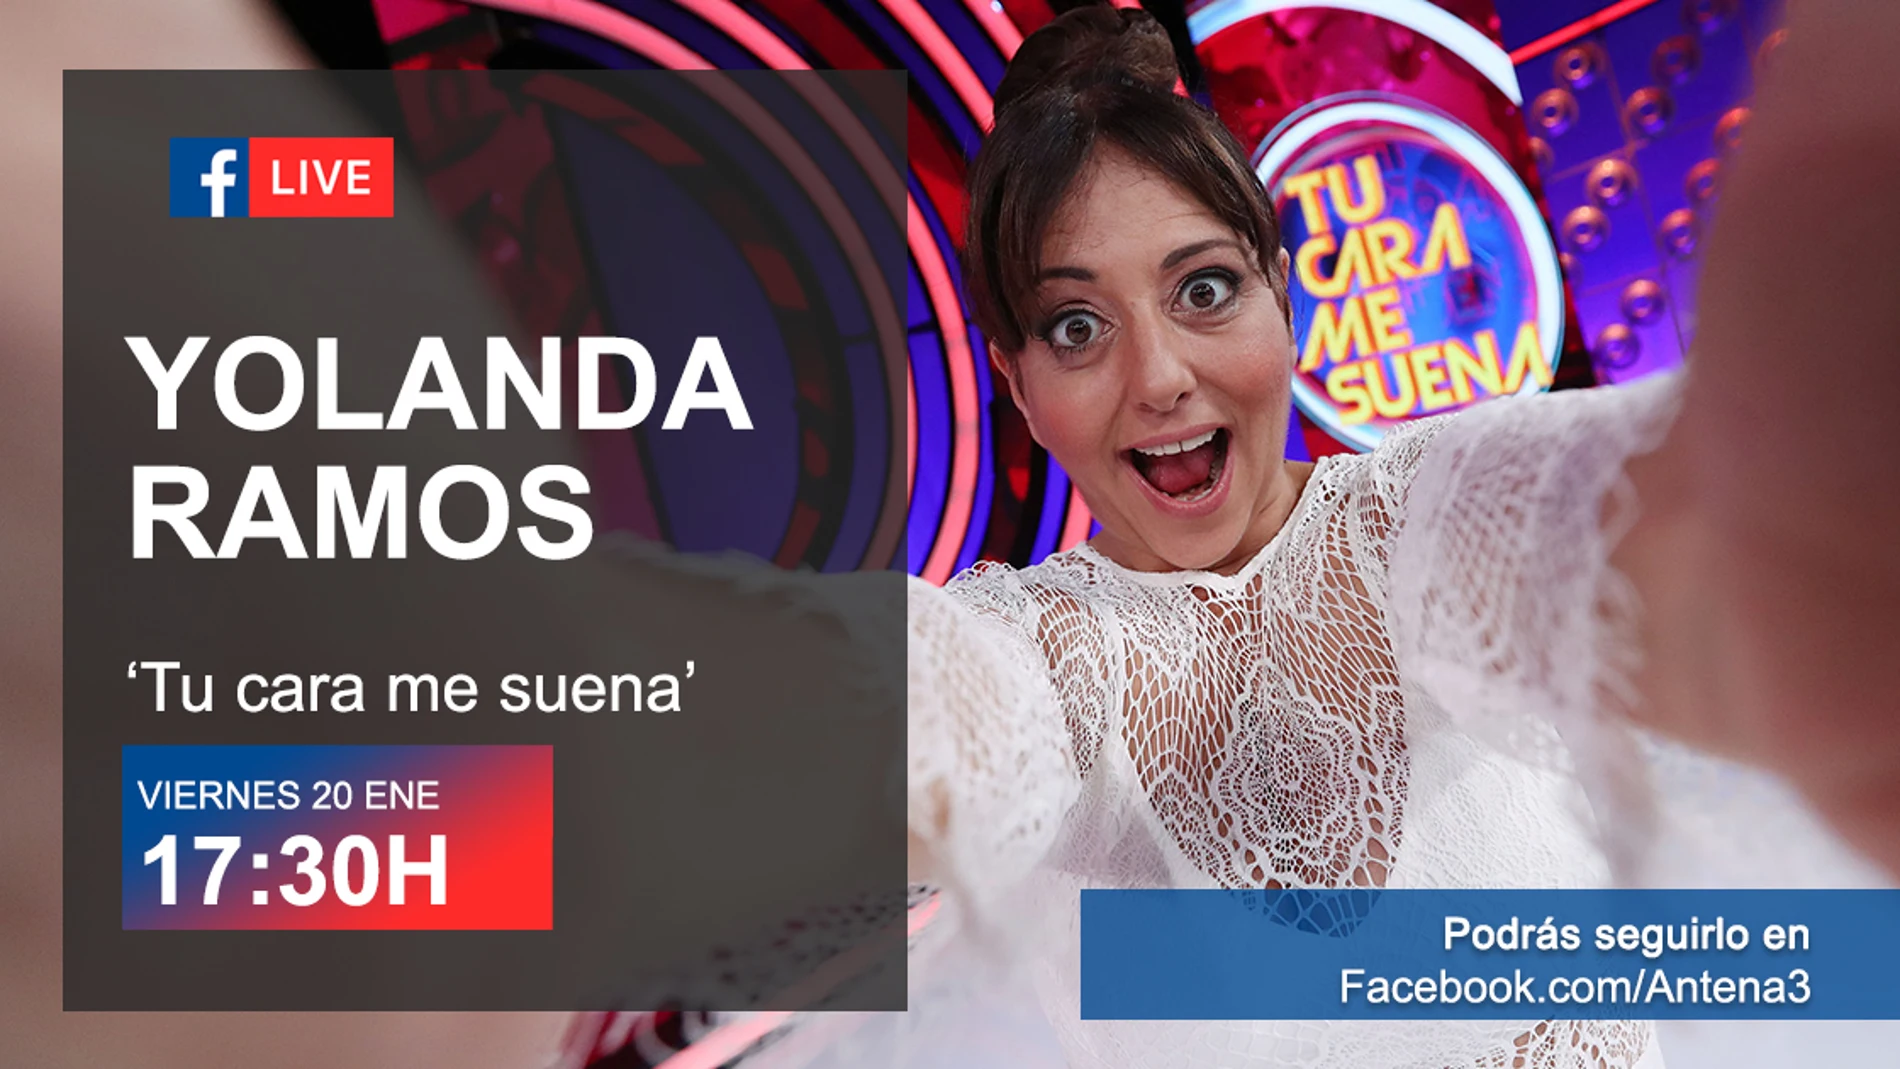 El viernes, lloramos de la risa en directo con Yolanda Ramos en Facebook Live